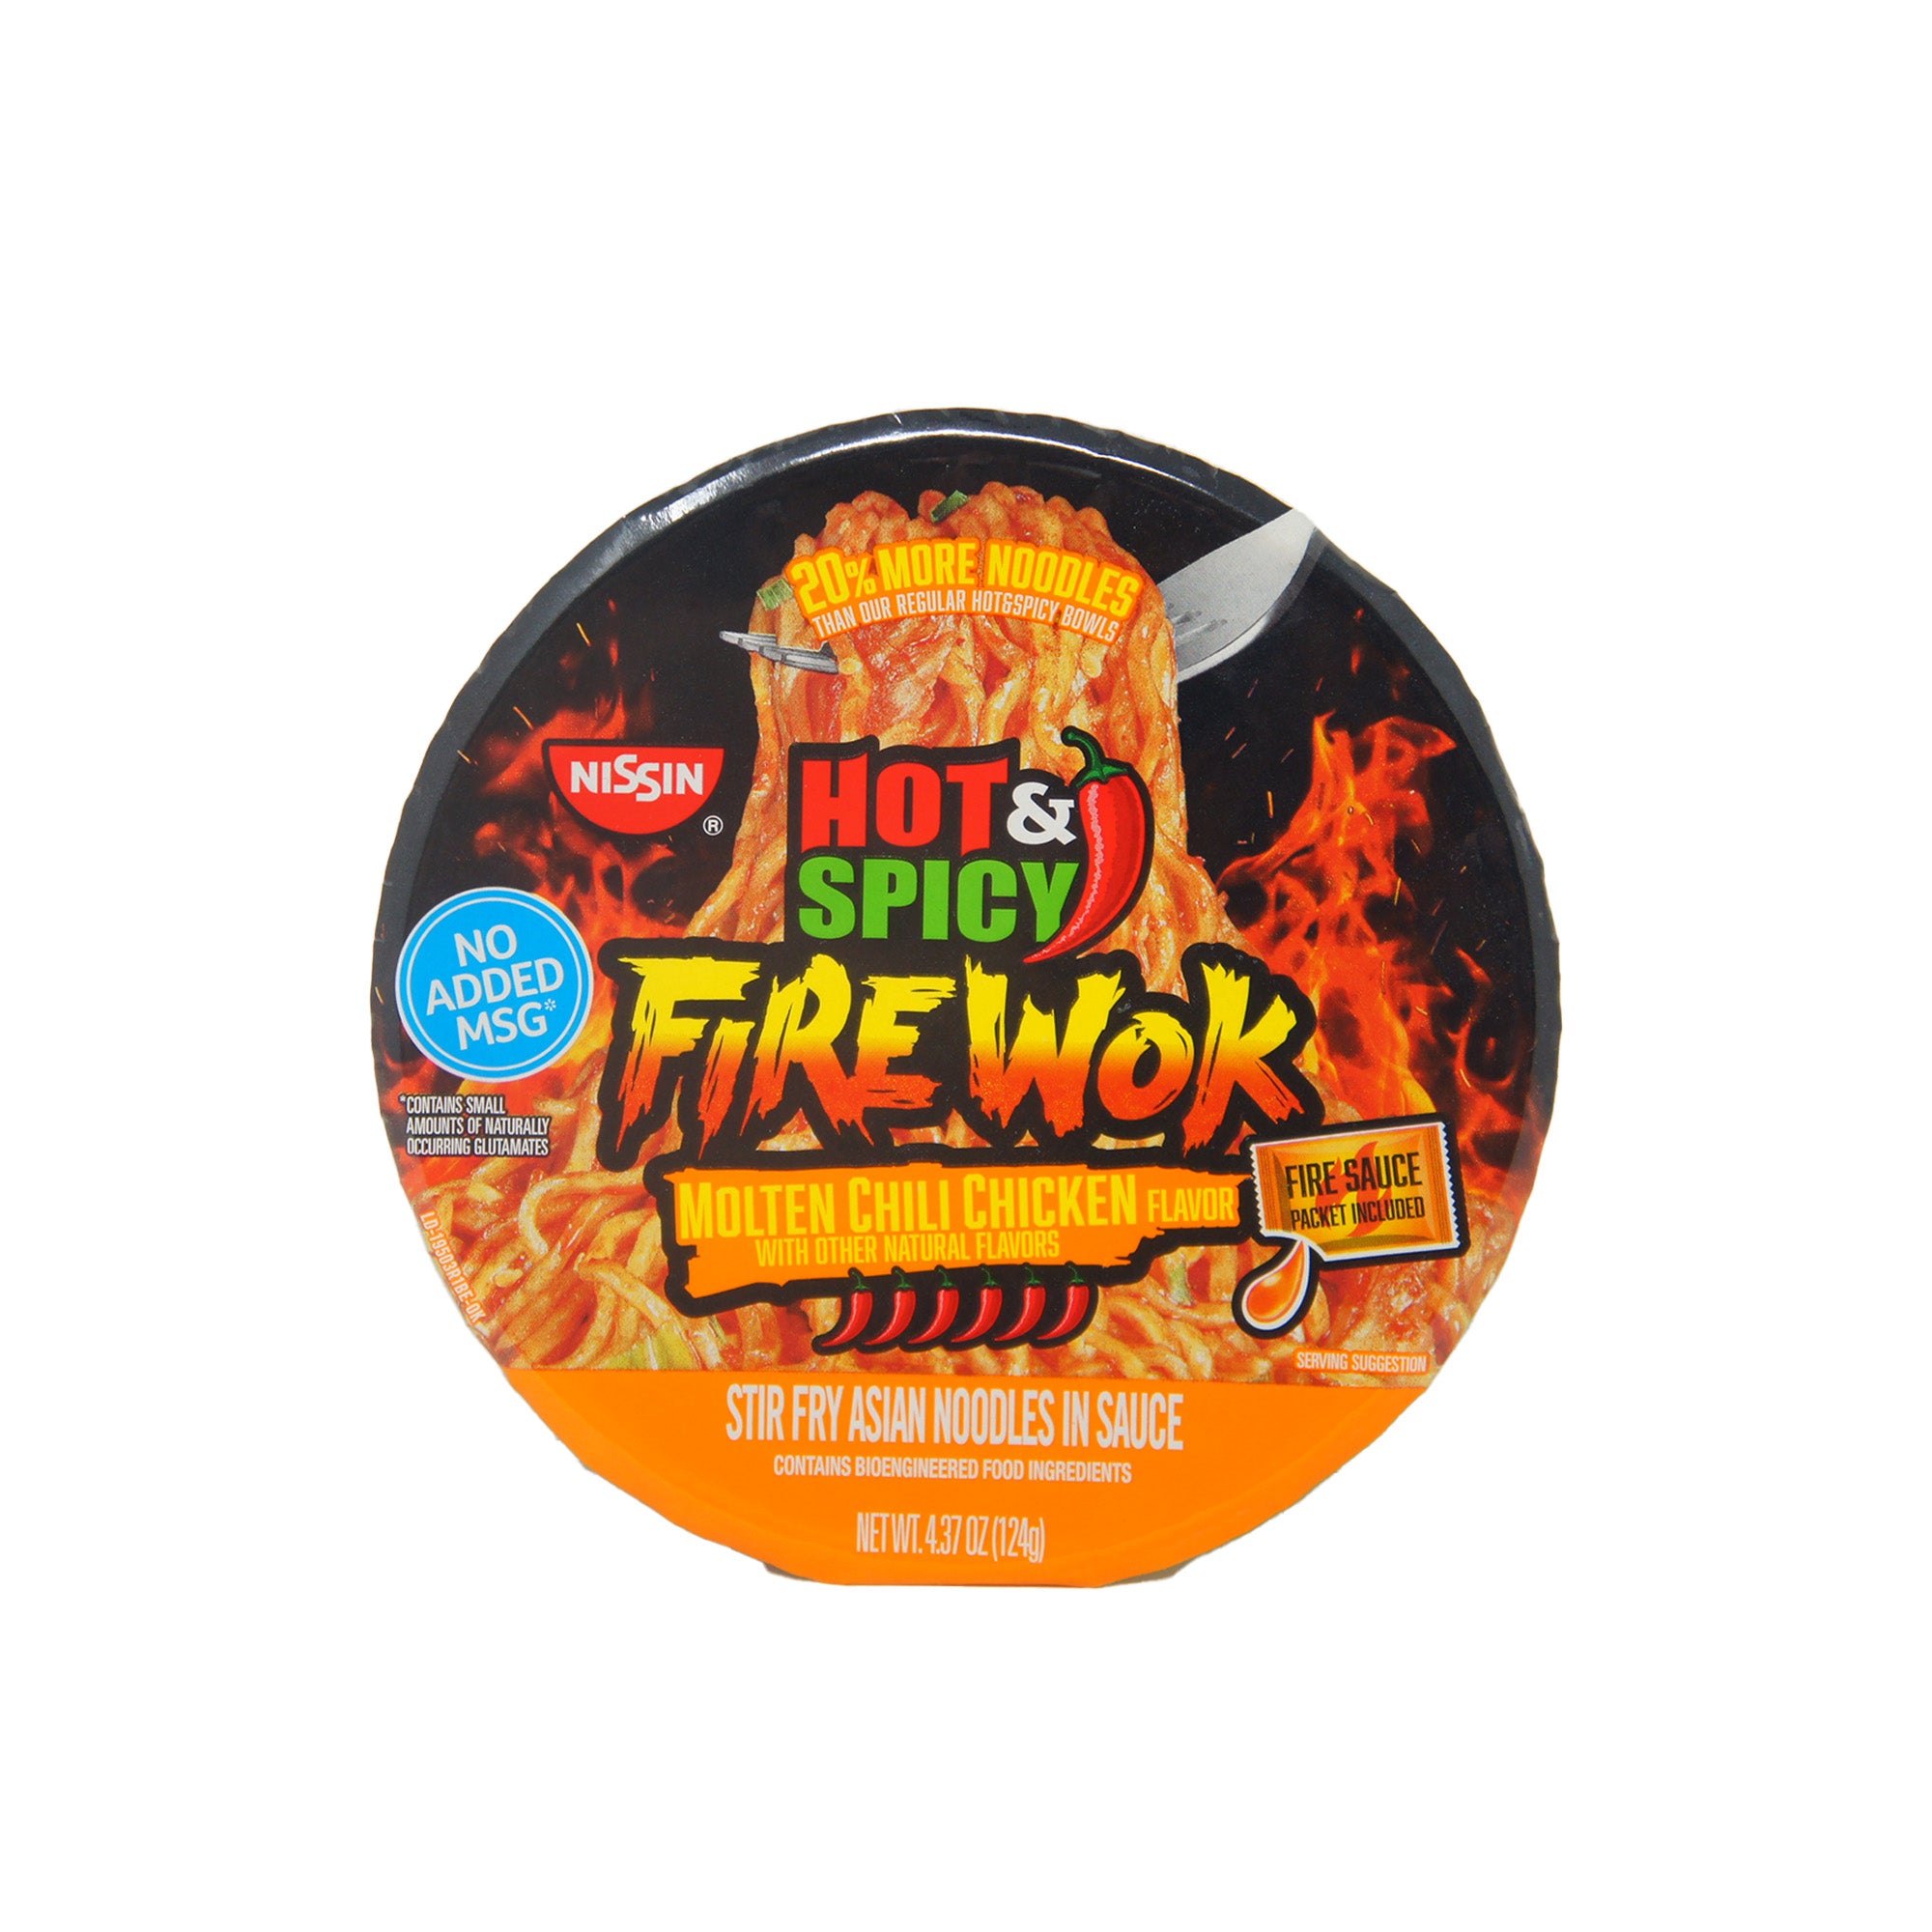 Hot & Spicy Firewok, Molten Chili Chicken Flavor, 4.37 oz